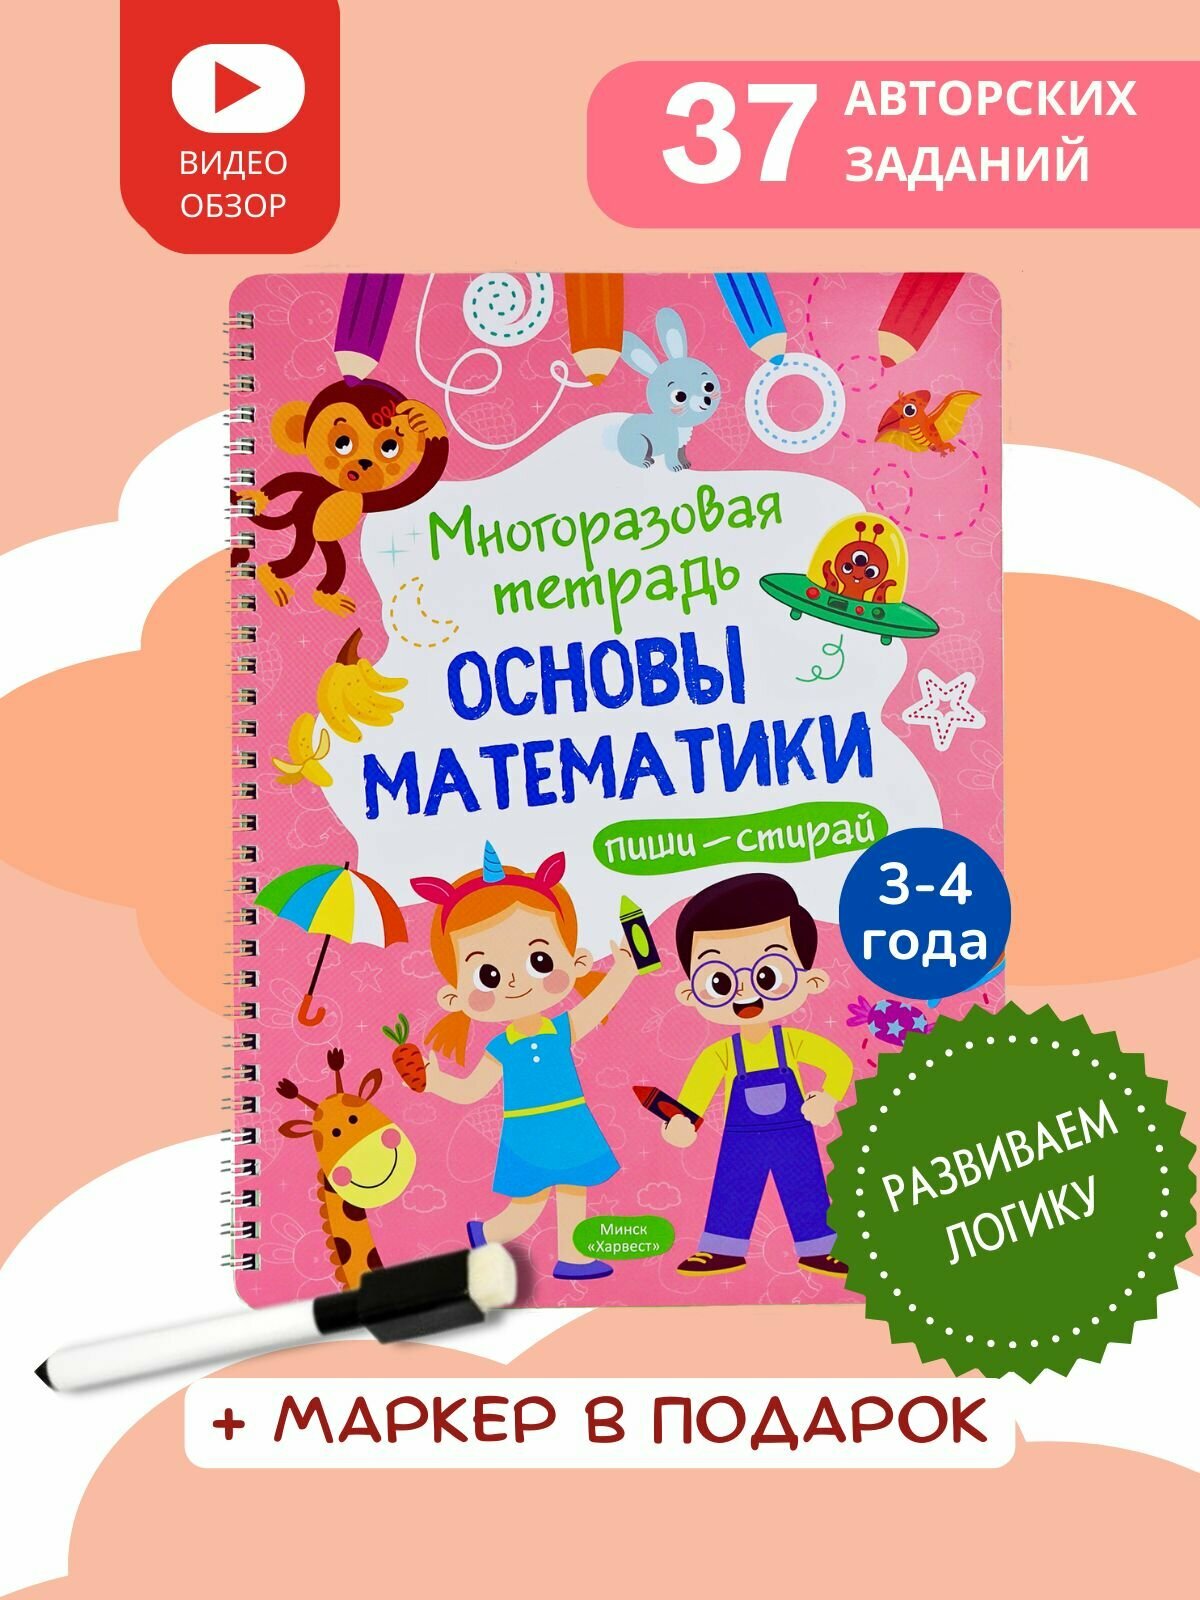 Многоразовая развивающая тетрадь пиши-стирай "Основы математики" для детей 3-4 года